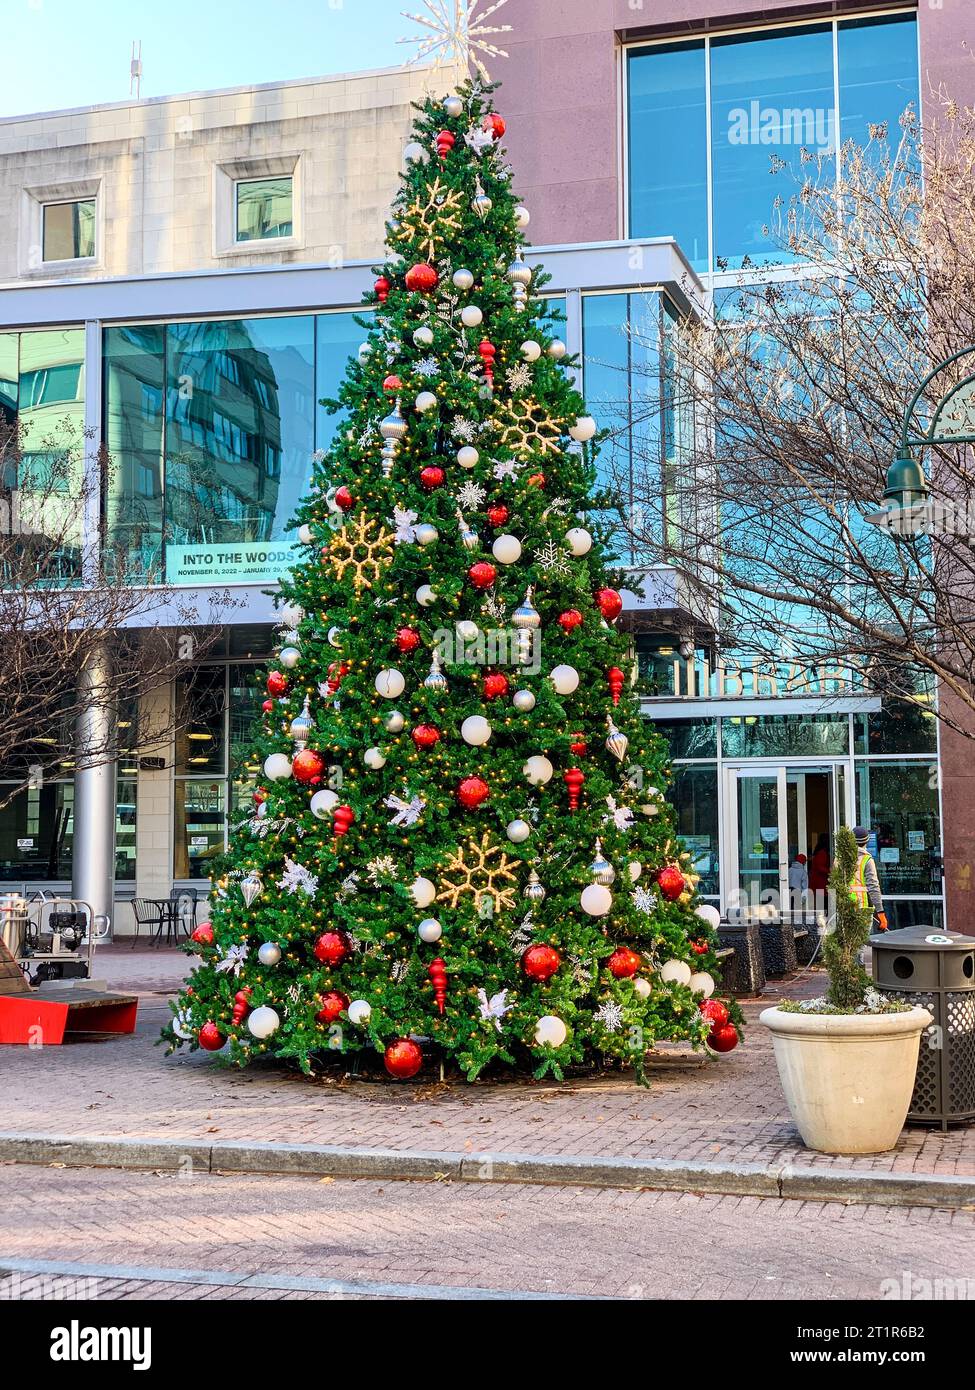 Weihnachtsbaumschmuck an der öffentlichen Straßenecke, Alexandria, Virginia, USA. Stockfoto